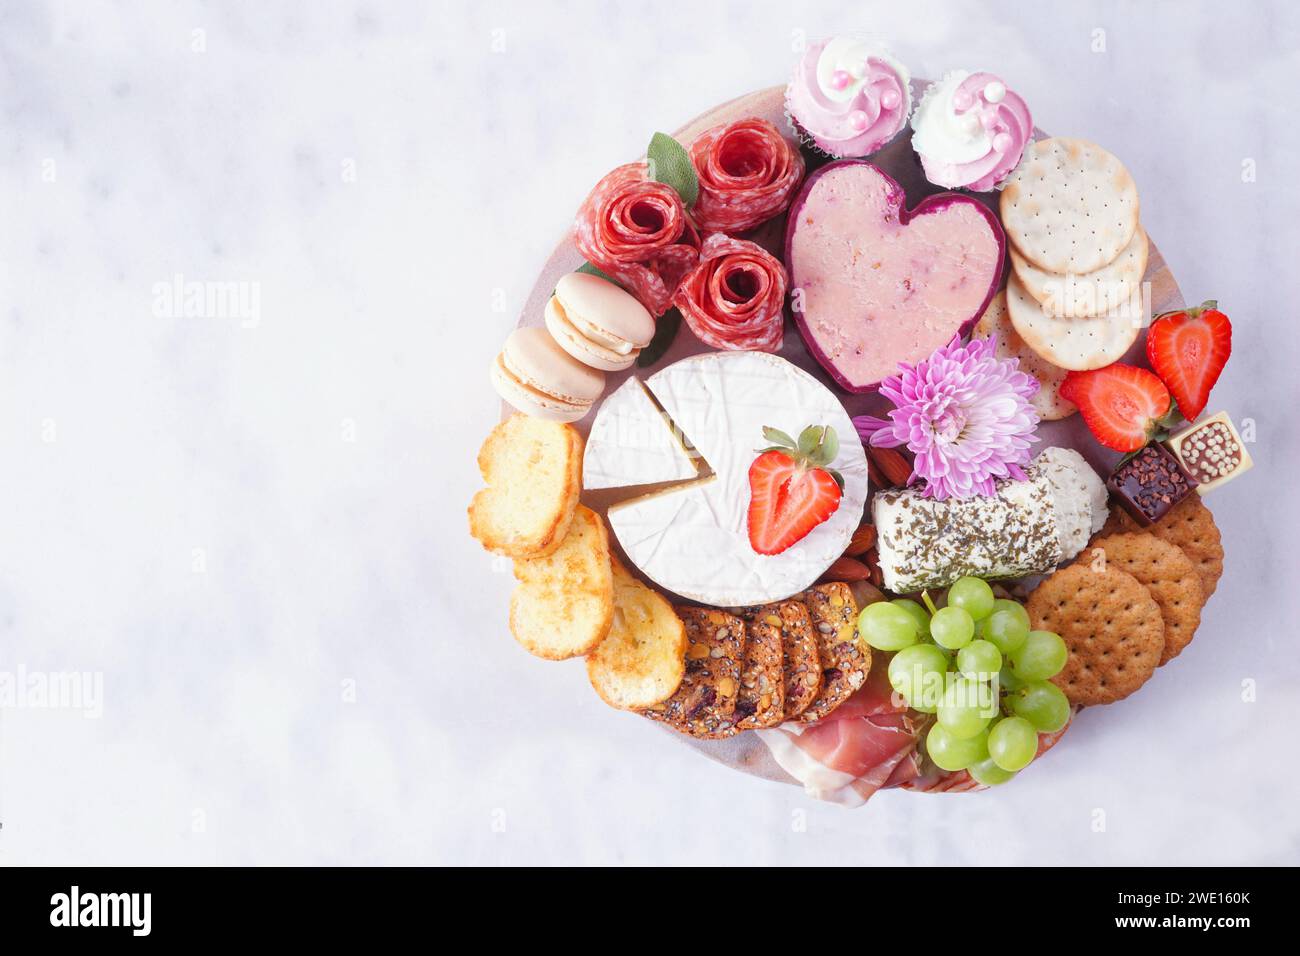 Tagliere a tema Festa della mamma su sfondo di marmo bianco. Assortimento di formaggi, carne, frutta e antipasti dolci. Vista dall'alto verso il basso. Foto Stock